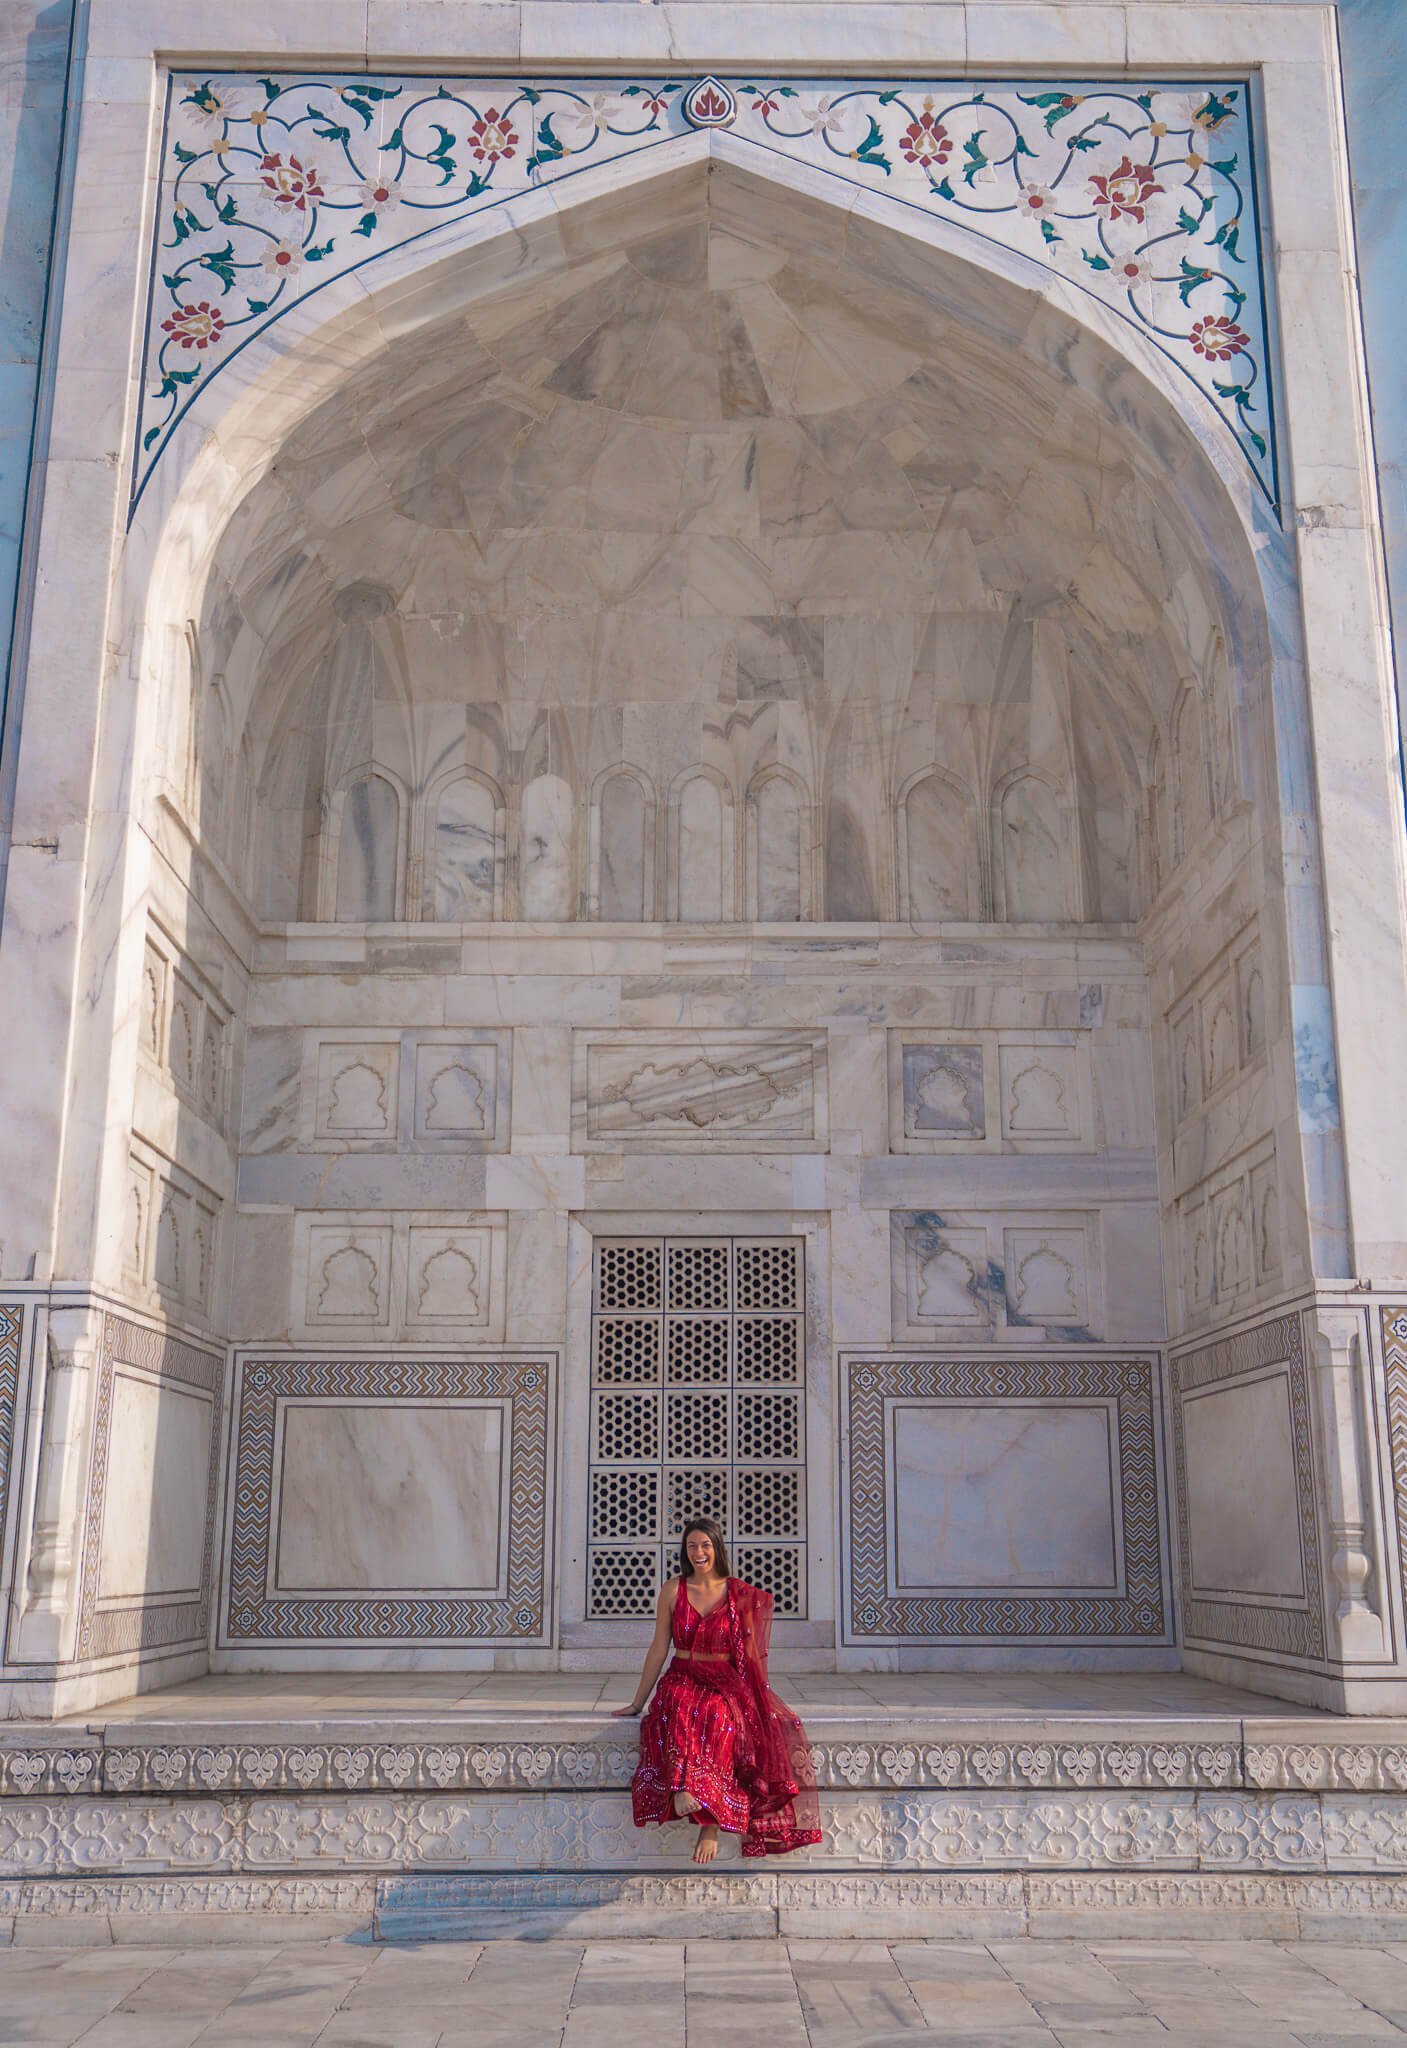 Visiting the Taj Mahal in India